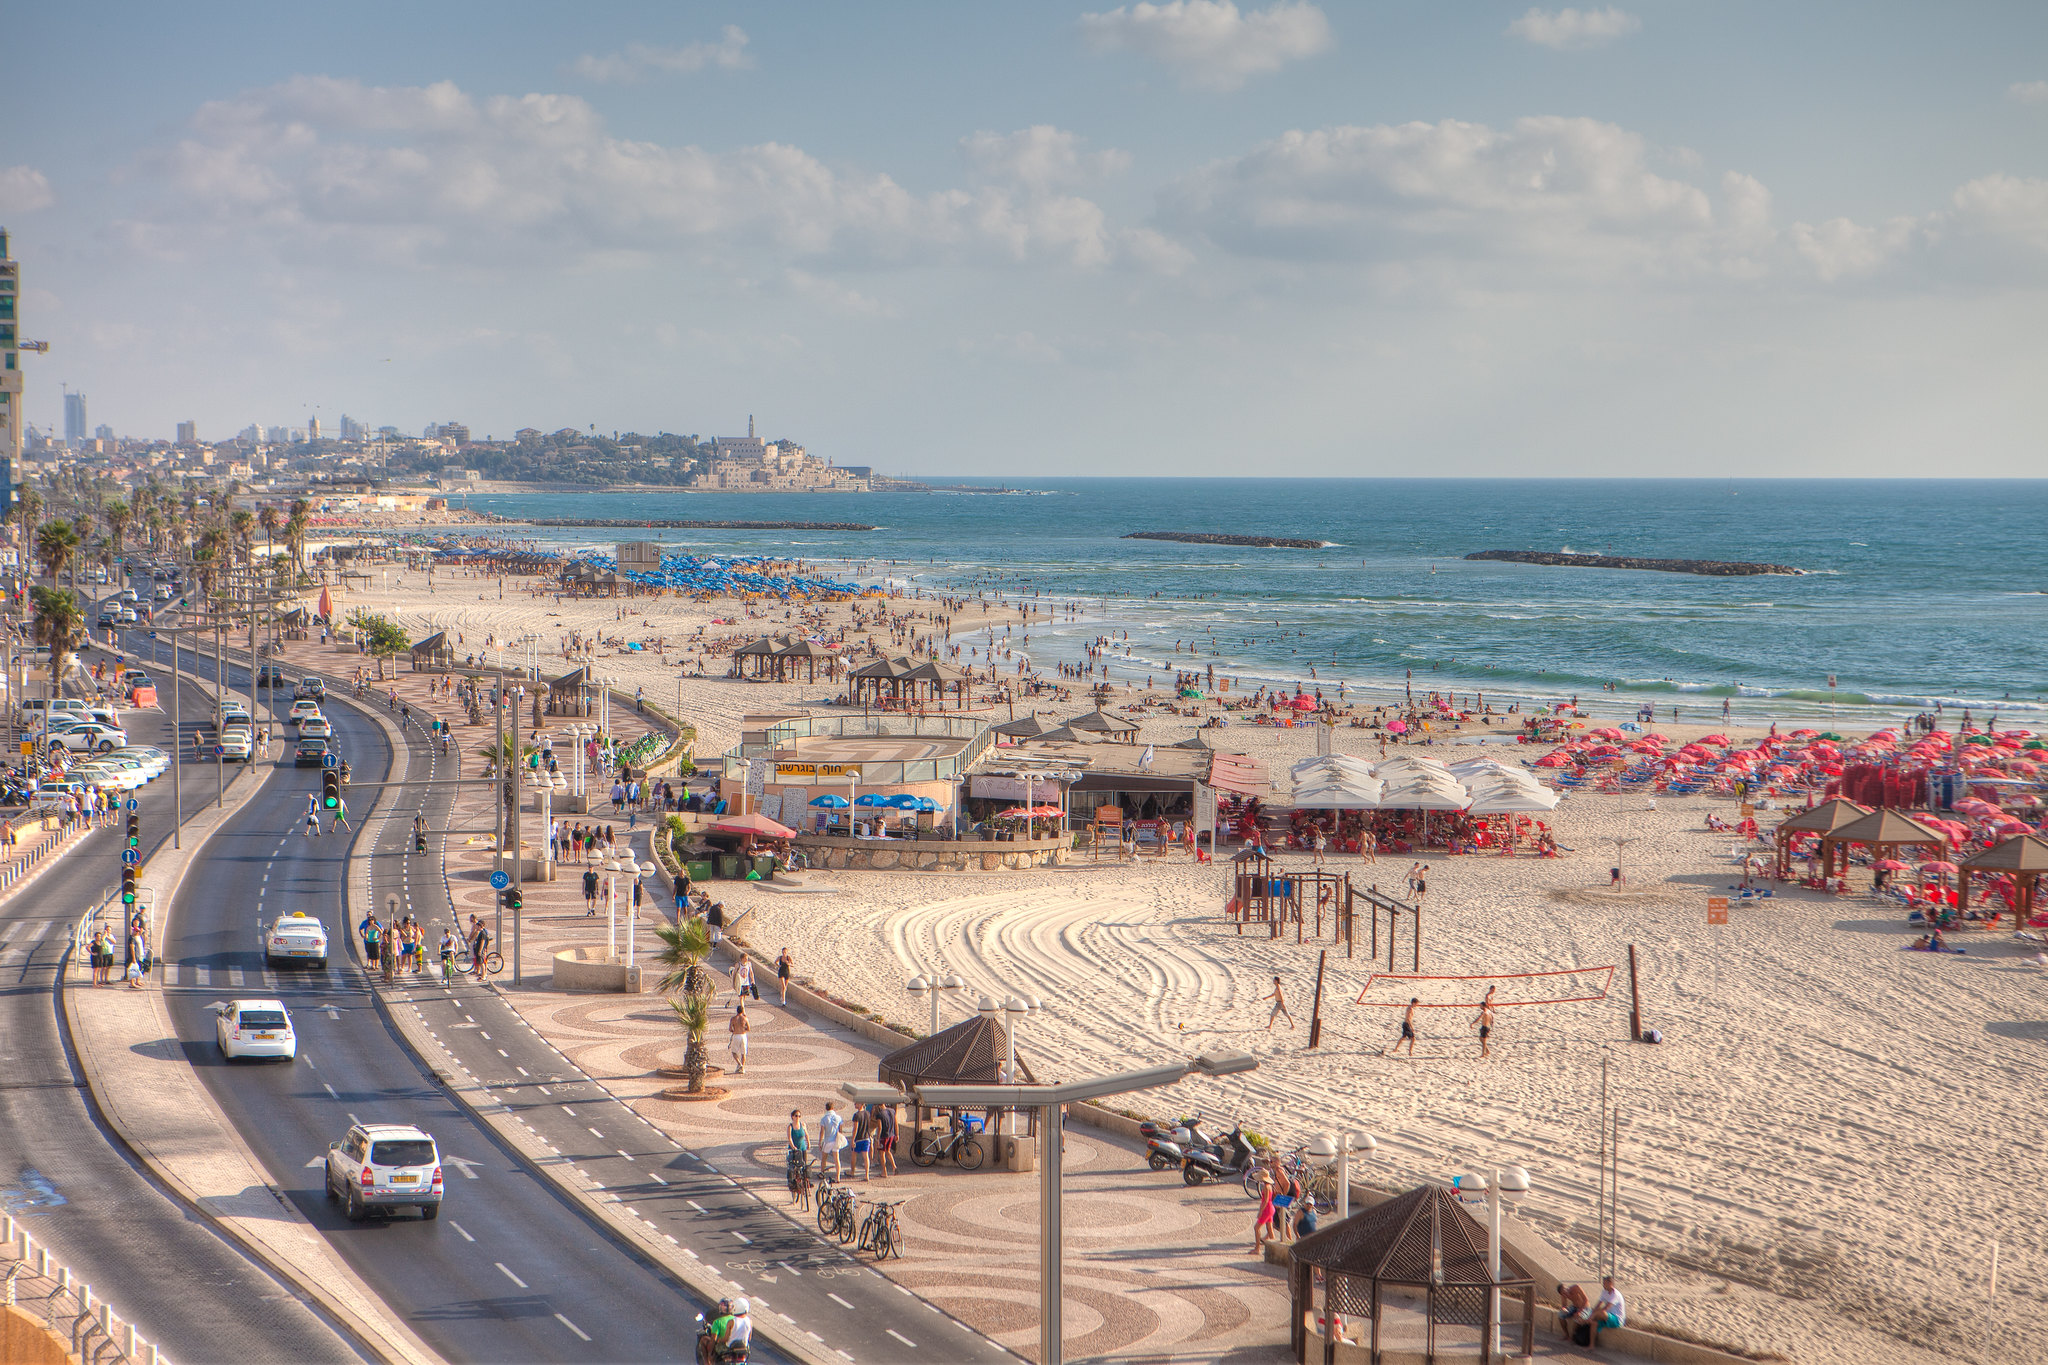 Turismo de Israel patrocina la pre-party española y te presenta el festival de Tel Aviv